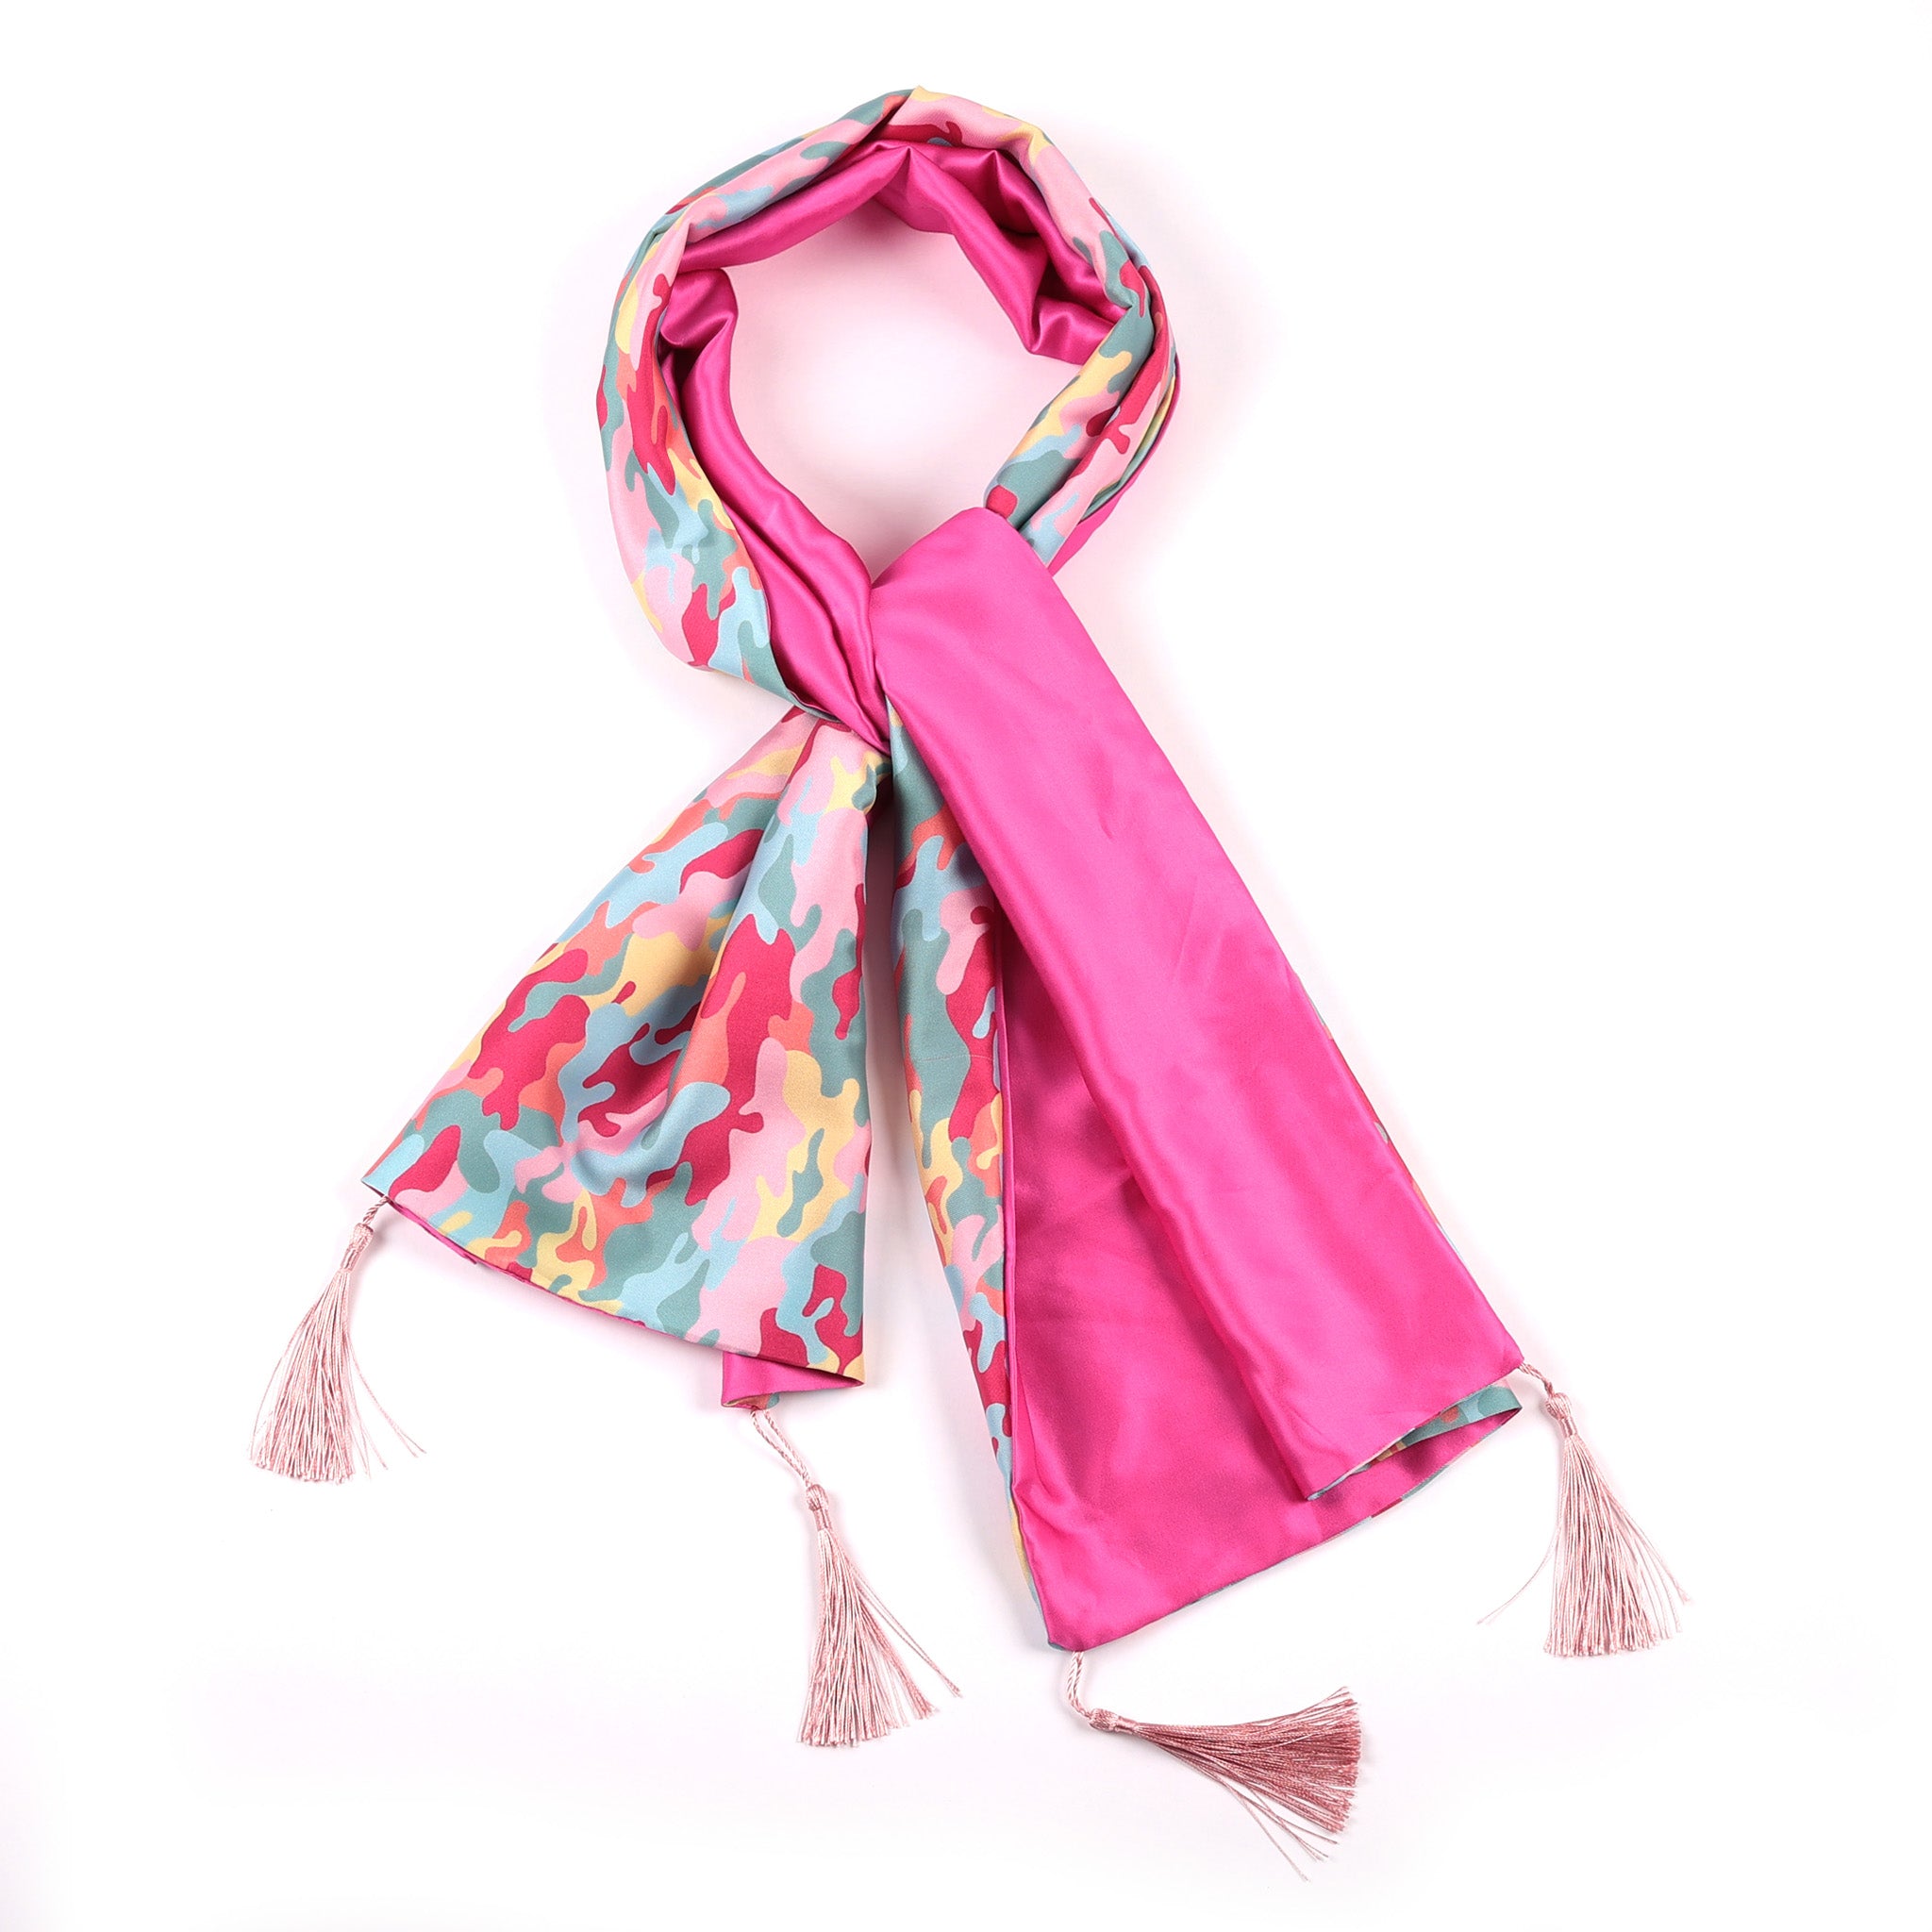 dance fever camo print scarf